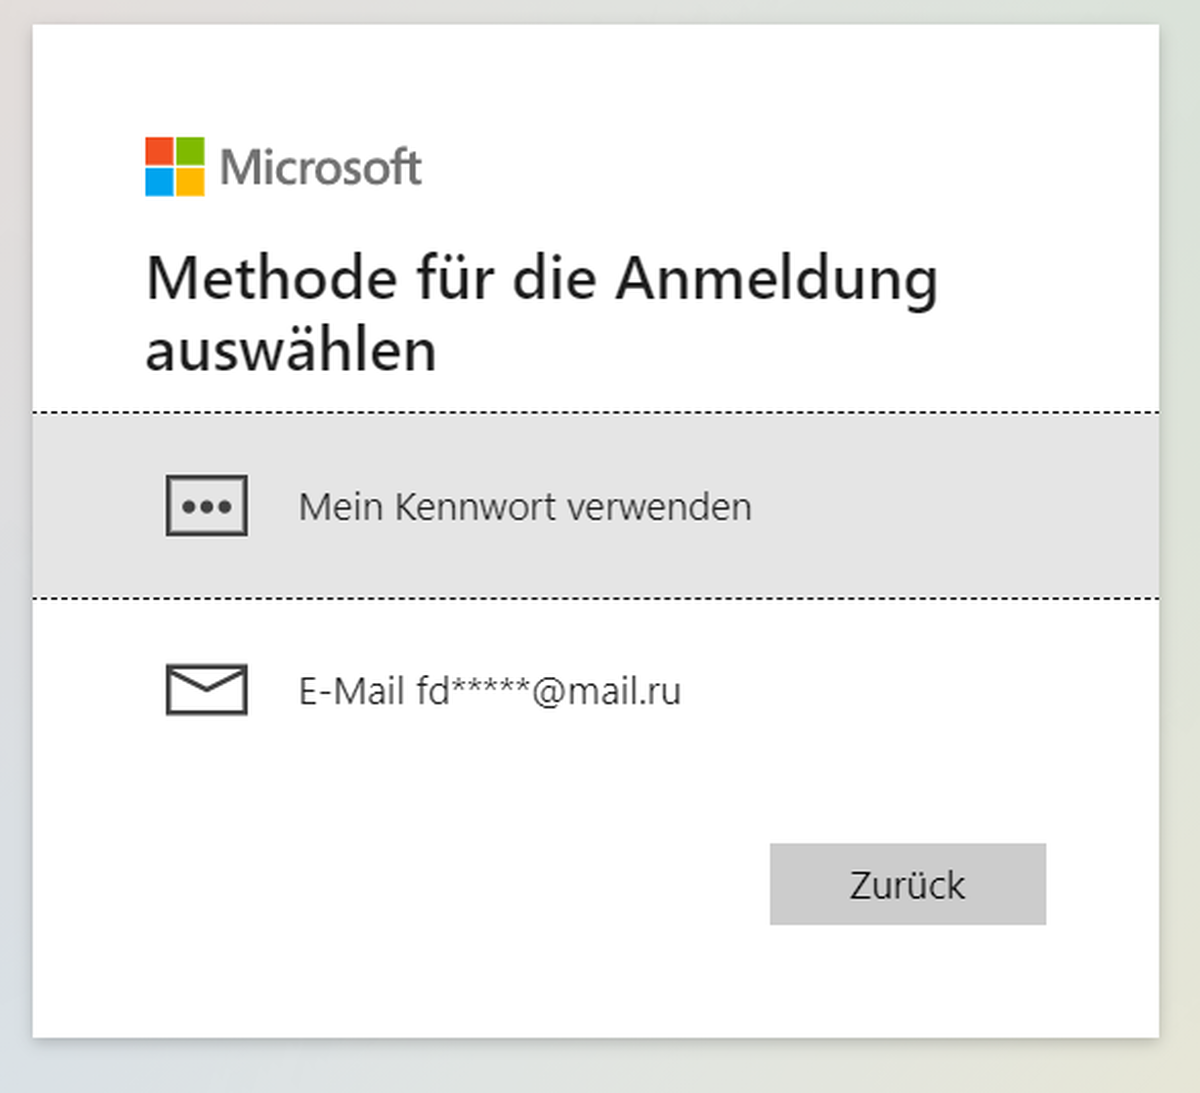 Die fremde Mailadresse im Microsoft-Benutzerkonto gibt einen klaren Hinweis, was passiert sein muss.